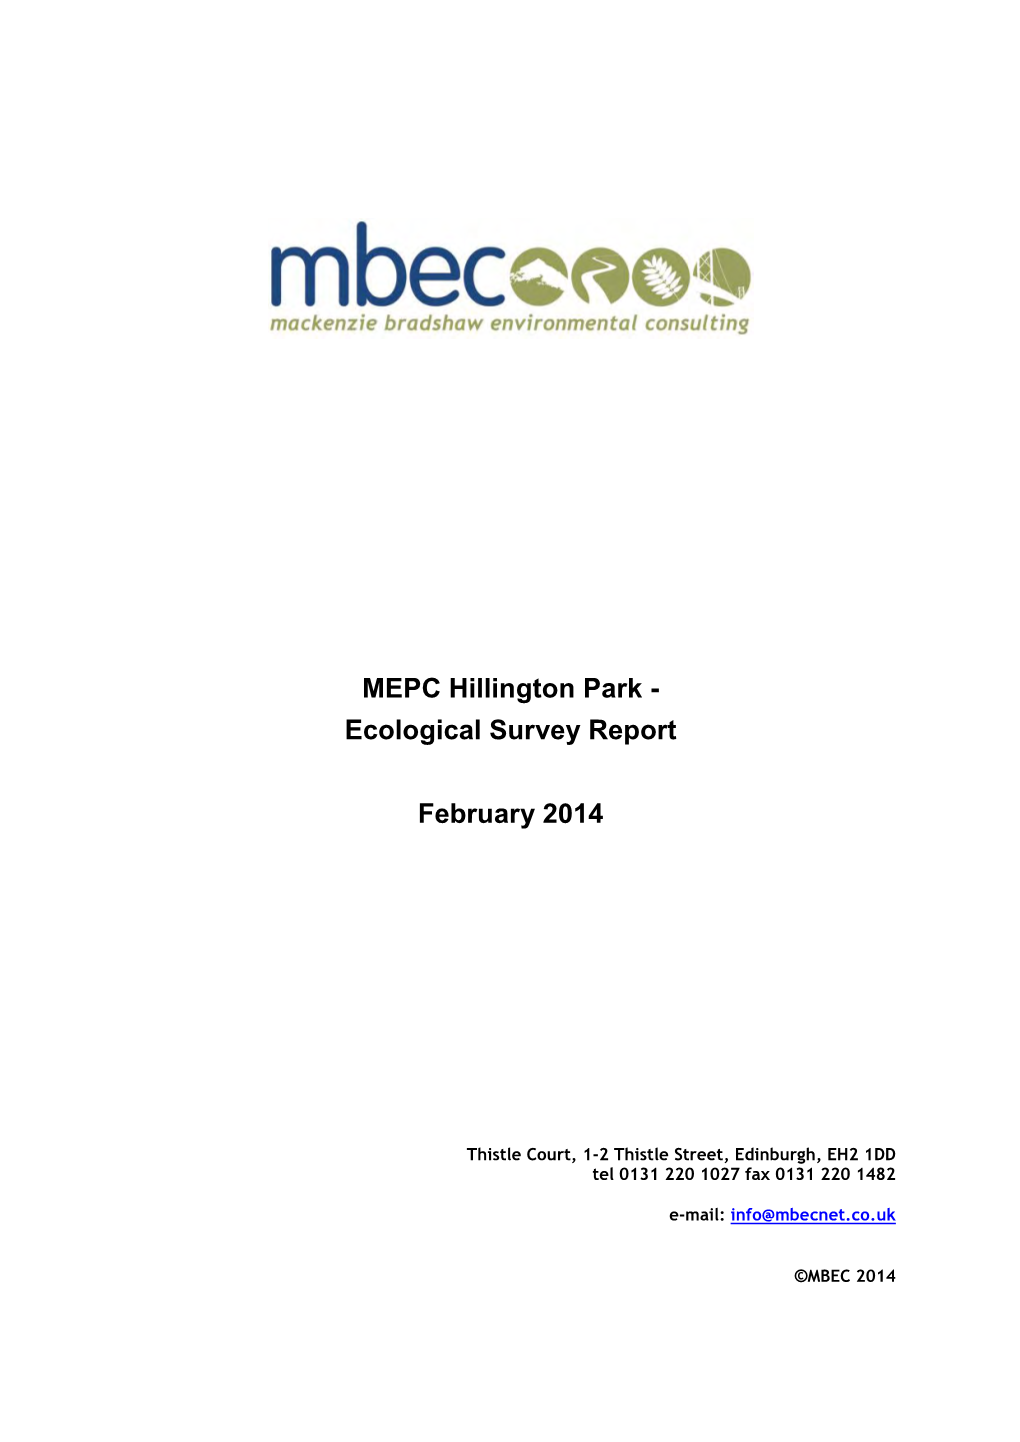 MEPC Hillington Park - Ecological Survey Report